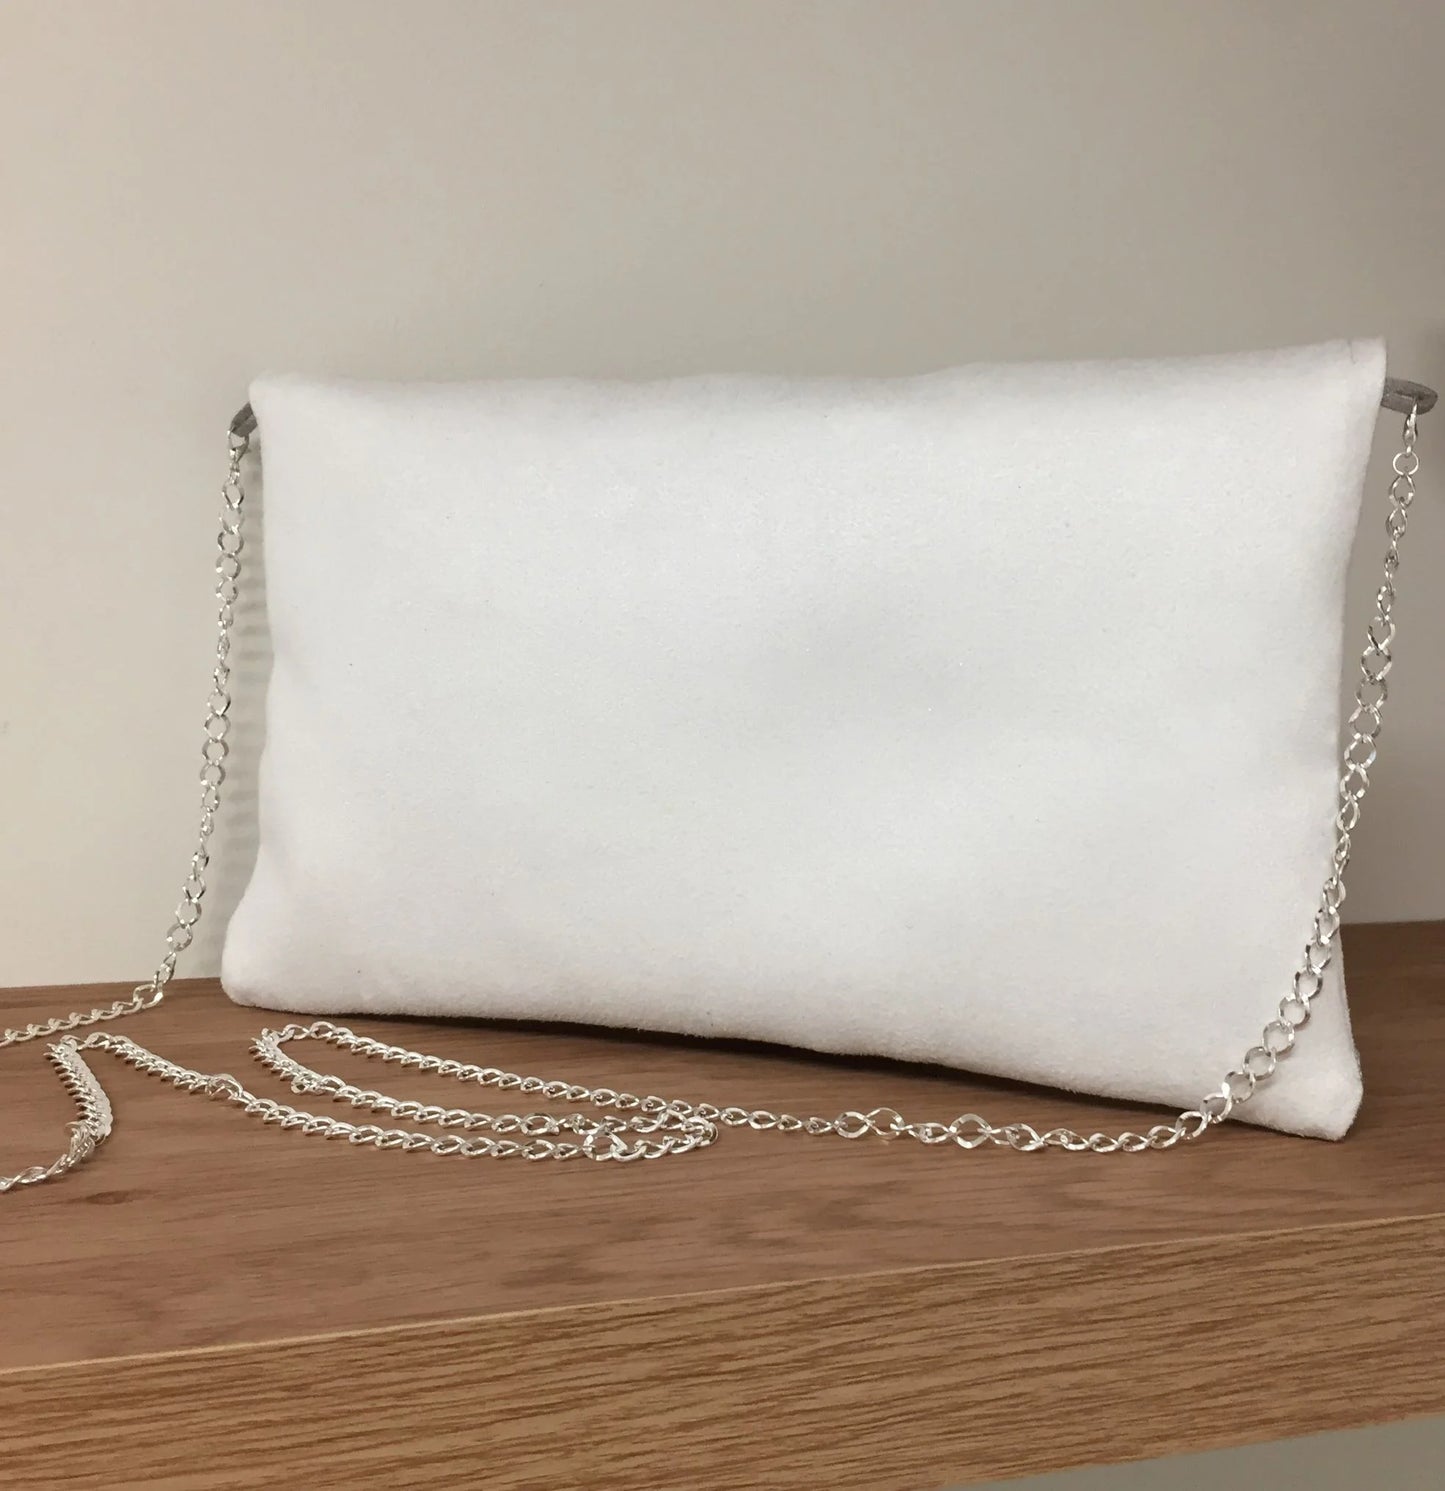 Vue de dos du sac pochette Isa blanc à paillettes argentées avec chainette amovible